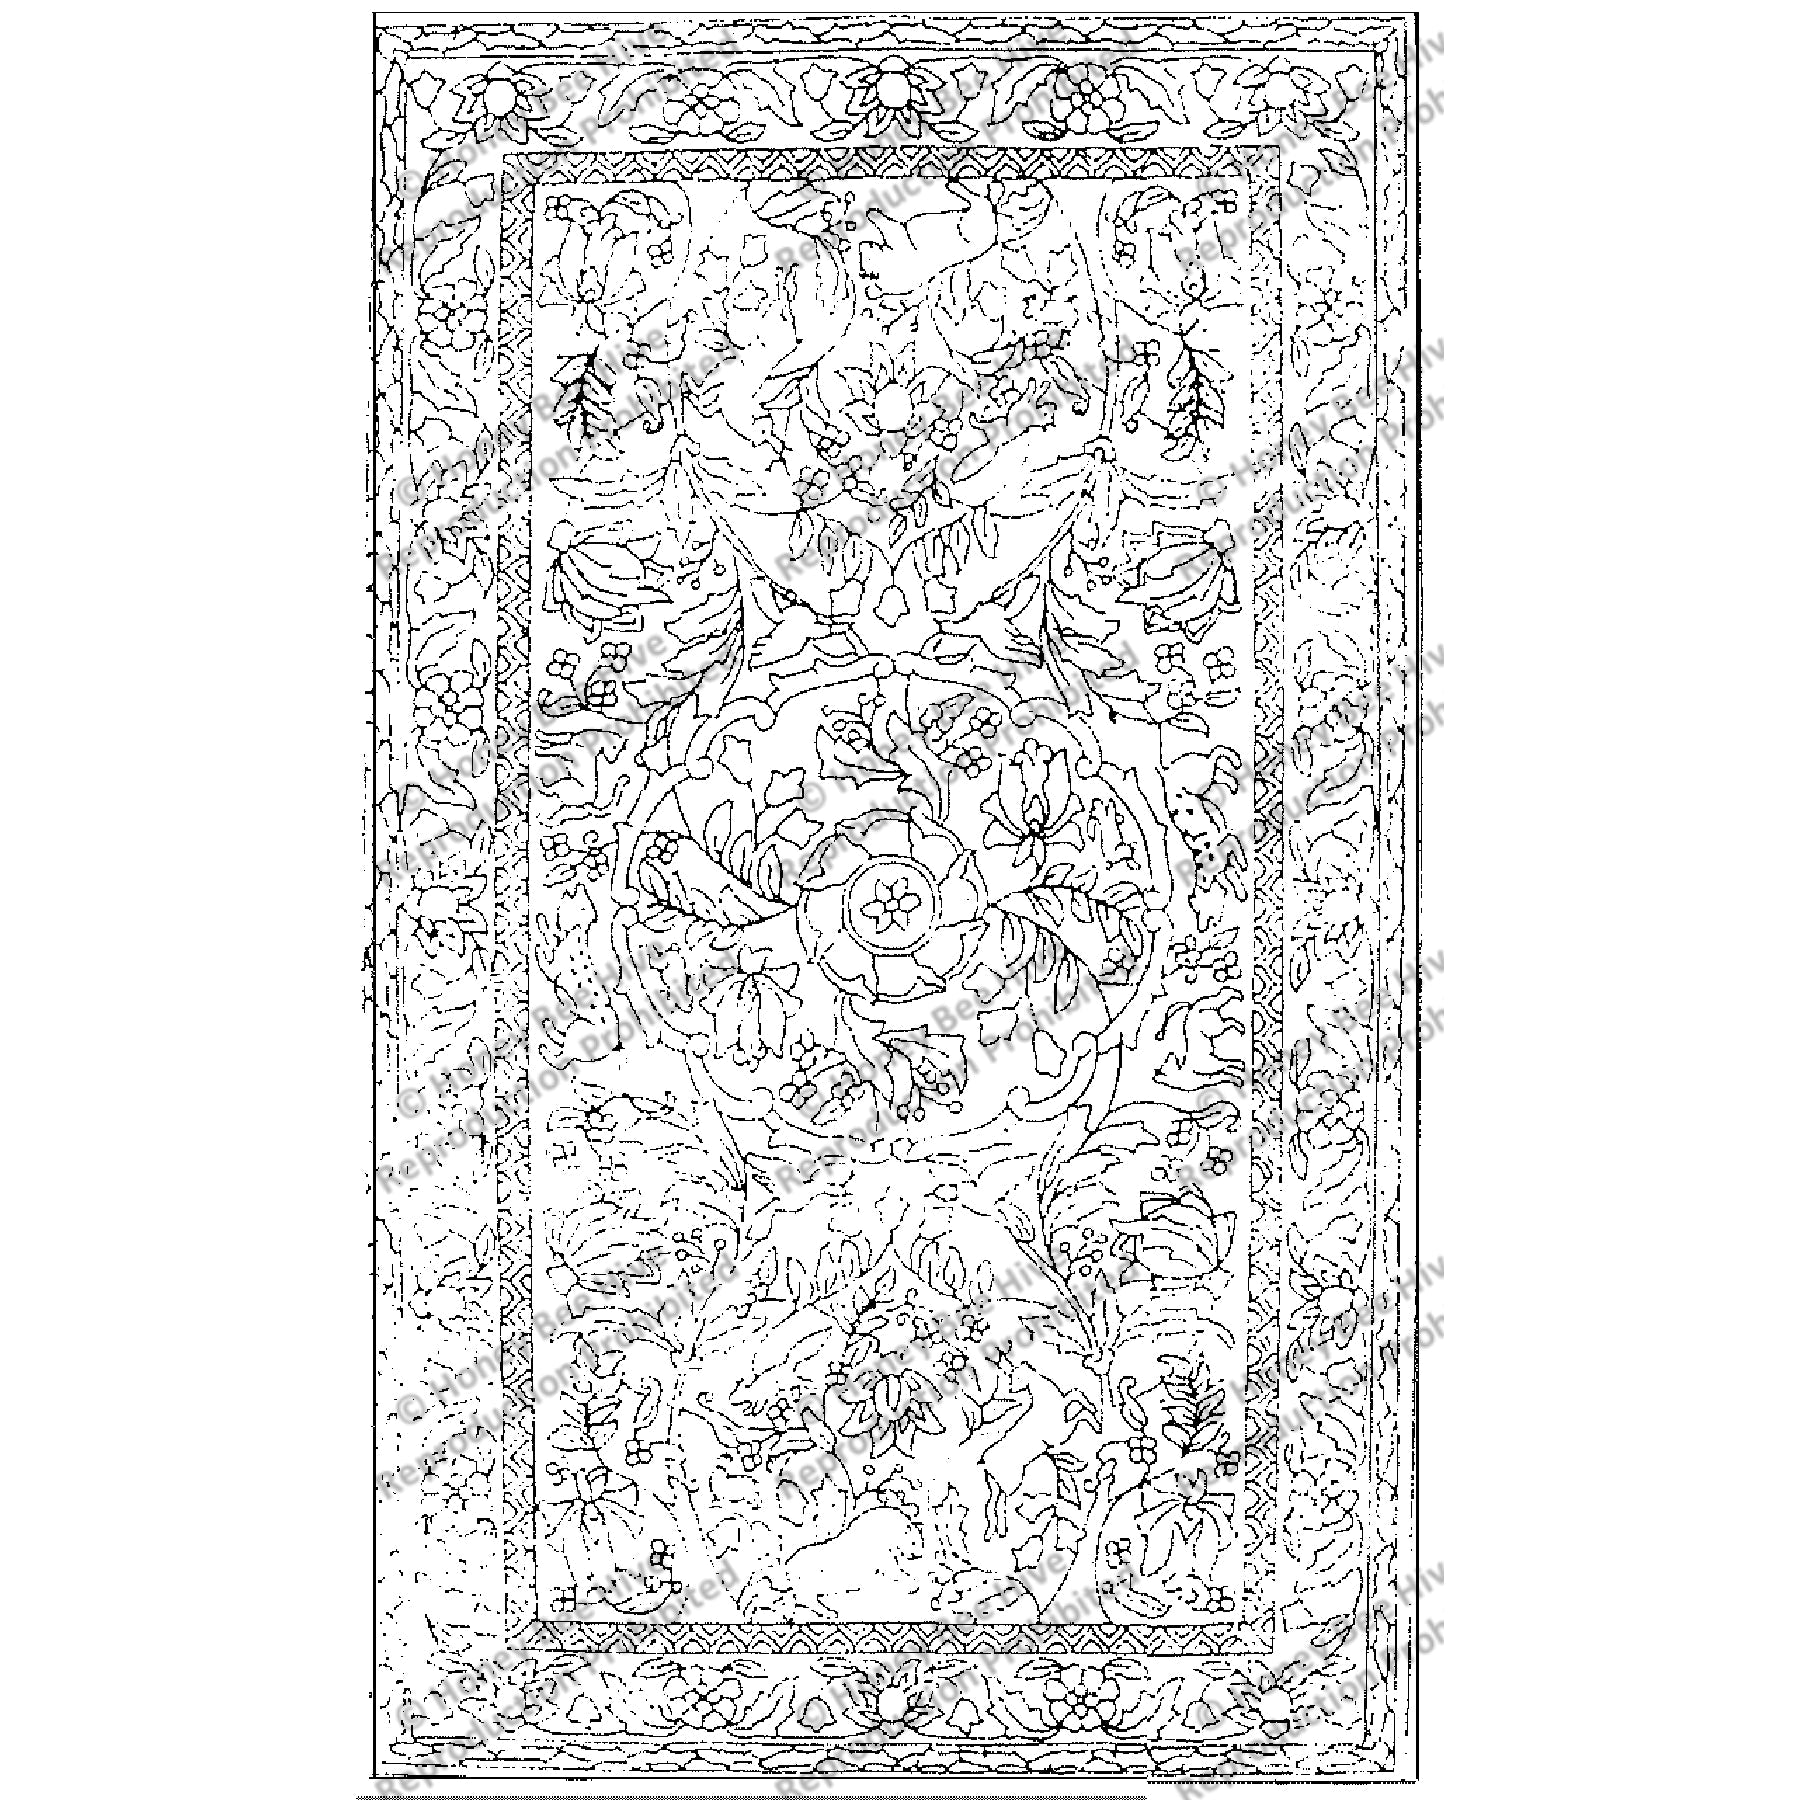 Kerman Caravan, rug hooking pattern